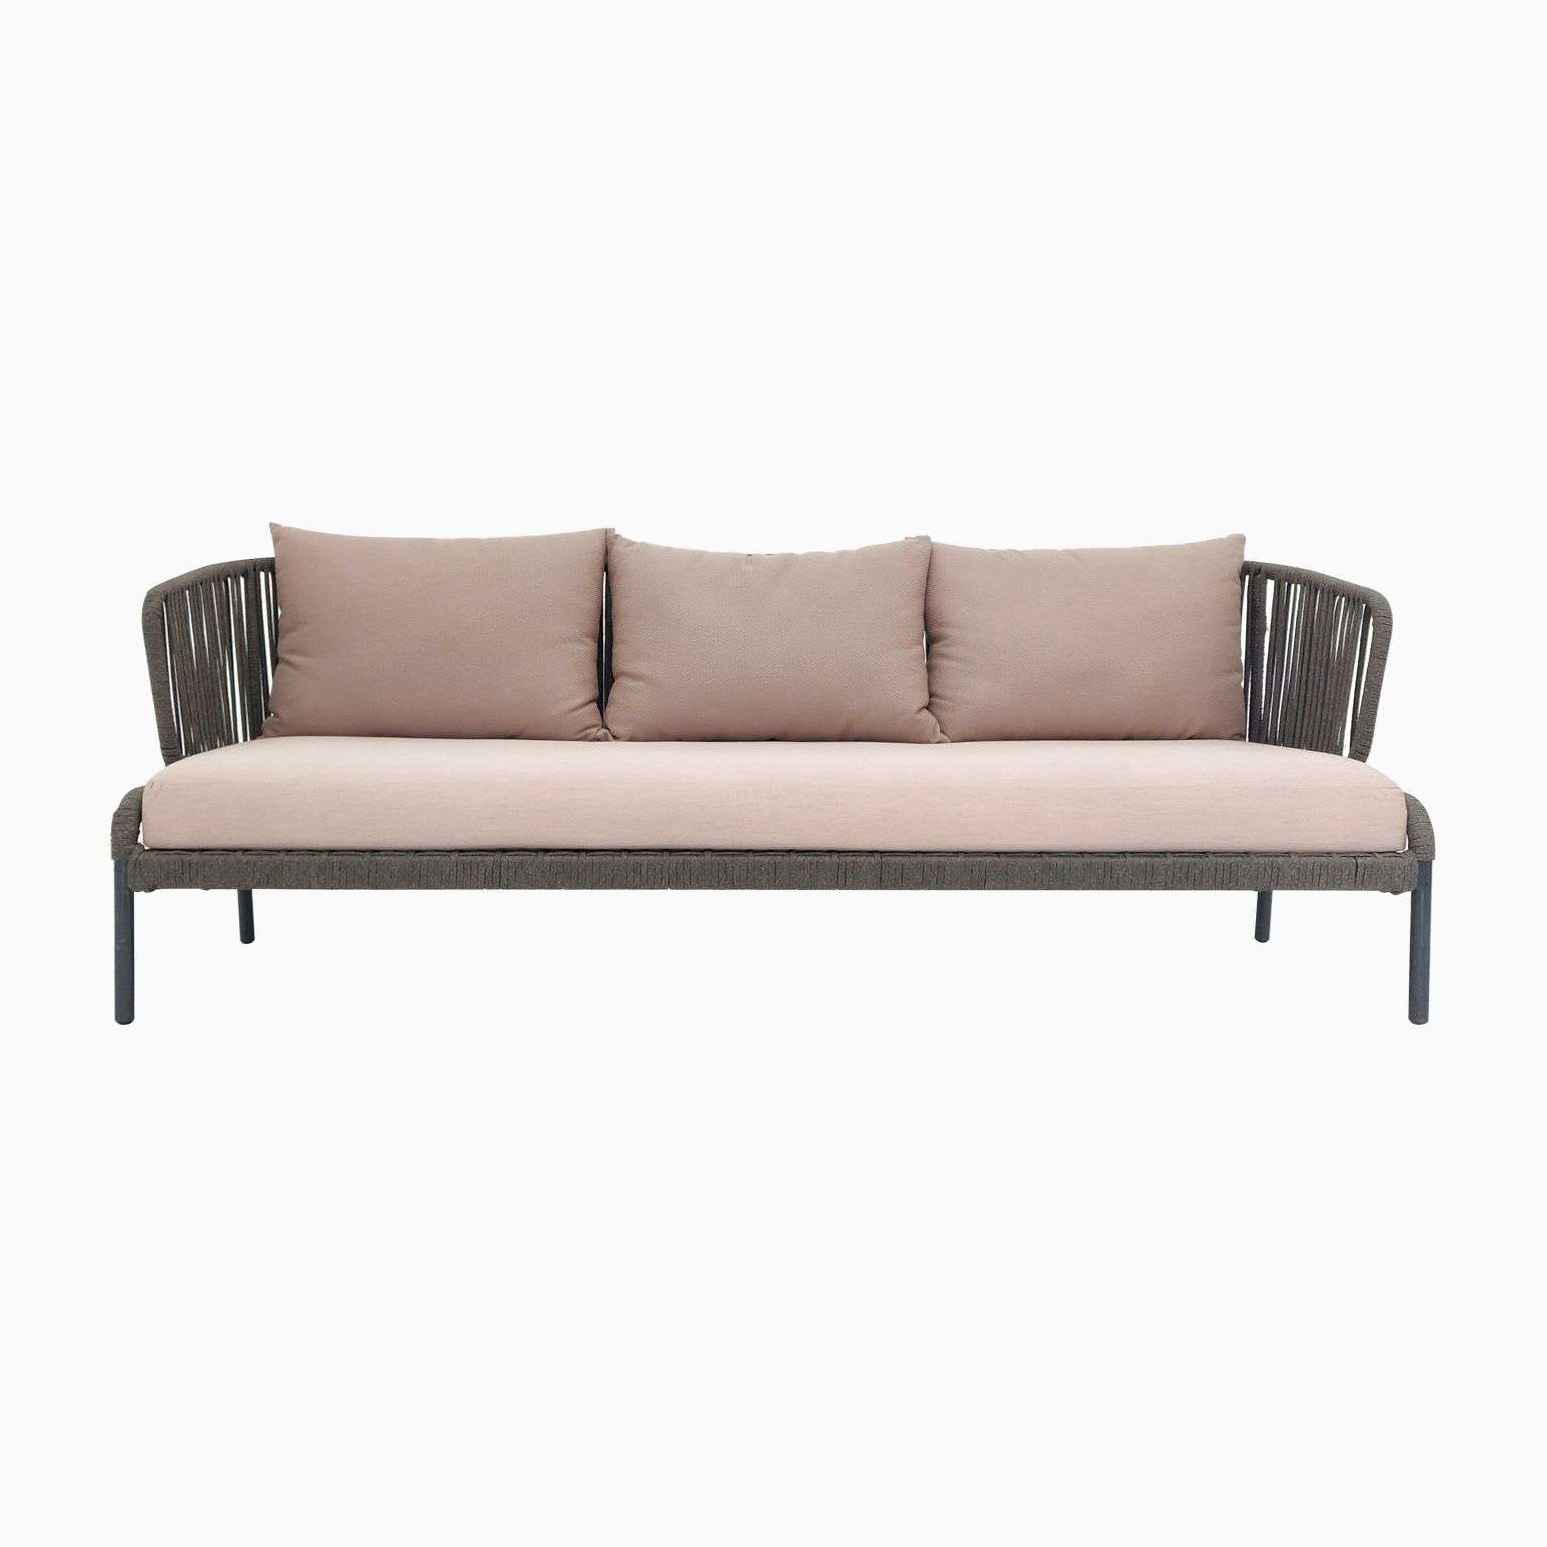 Uron Outdoor Sofa